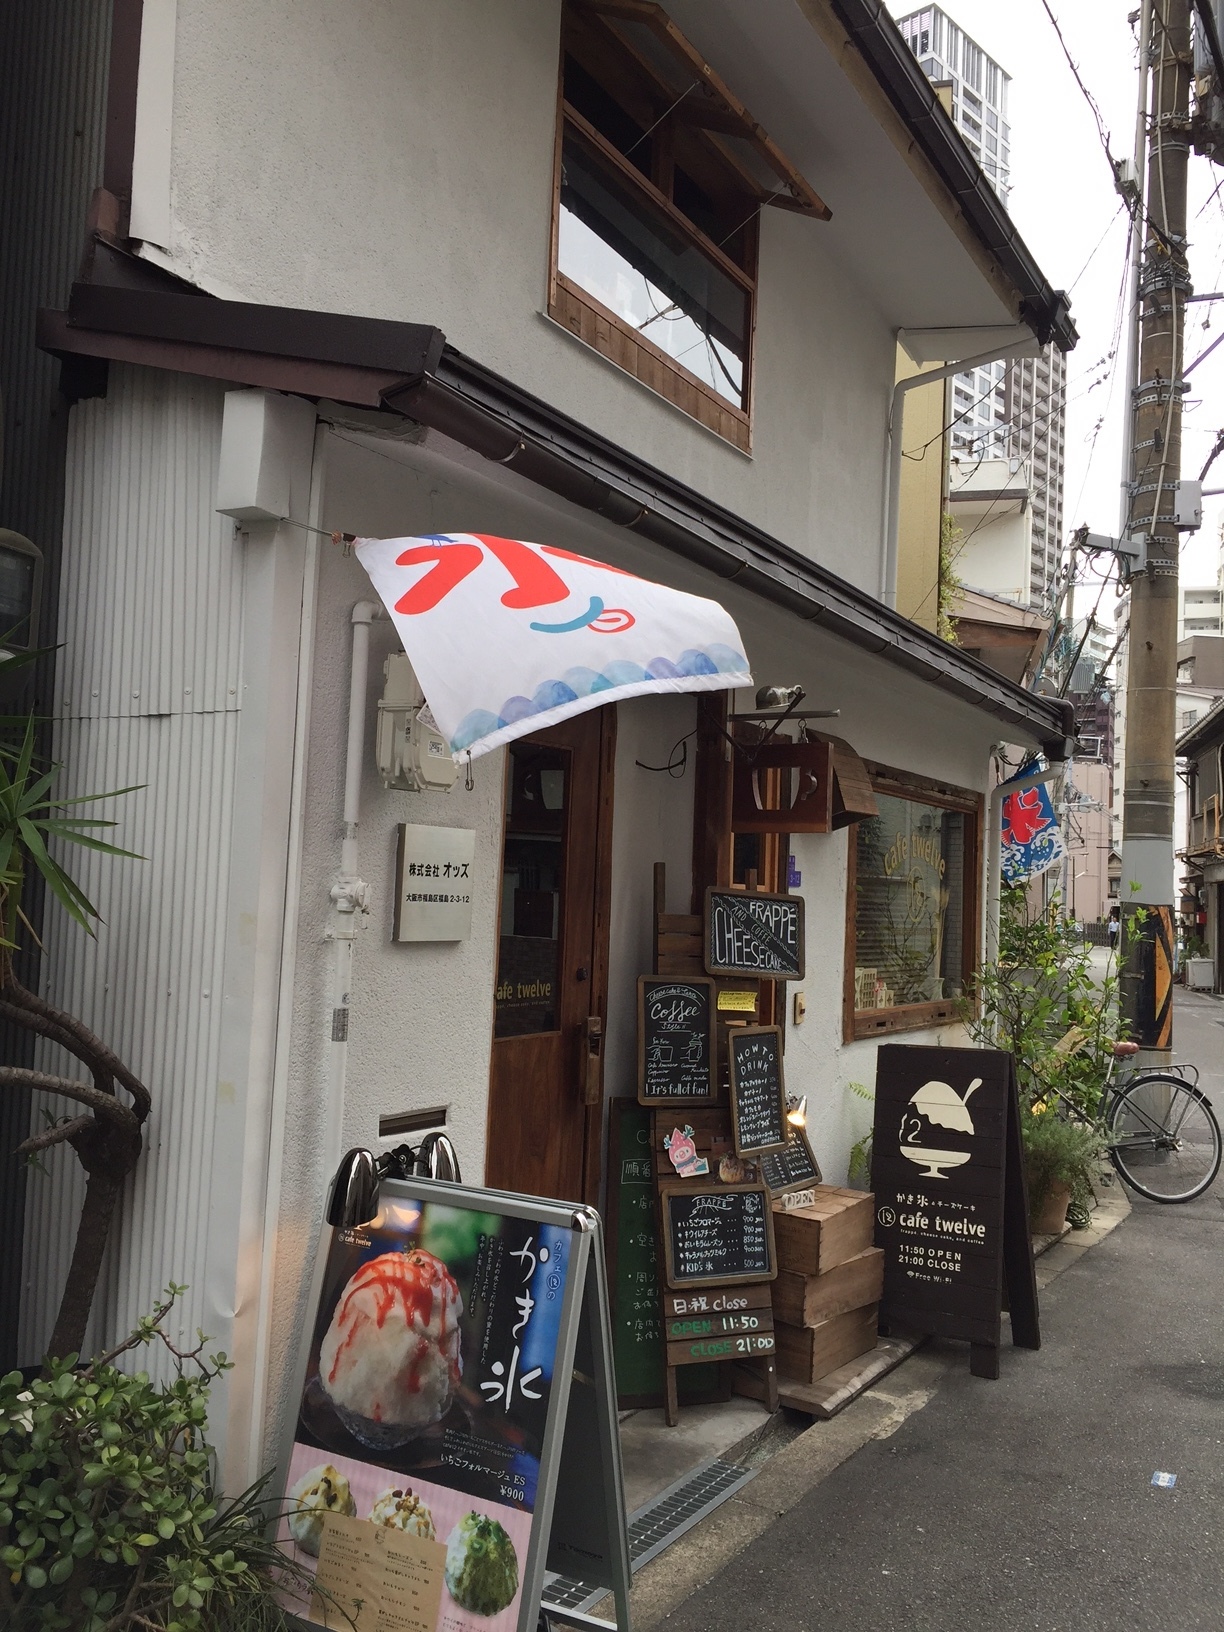 インスタ映えするかき氷 関西 新福島の古民家カフェcafe12がおしゃれ お出かけ大好き関西 休日は家族で 平日は友達と楽しむ小旅行